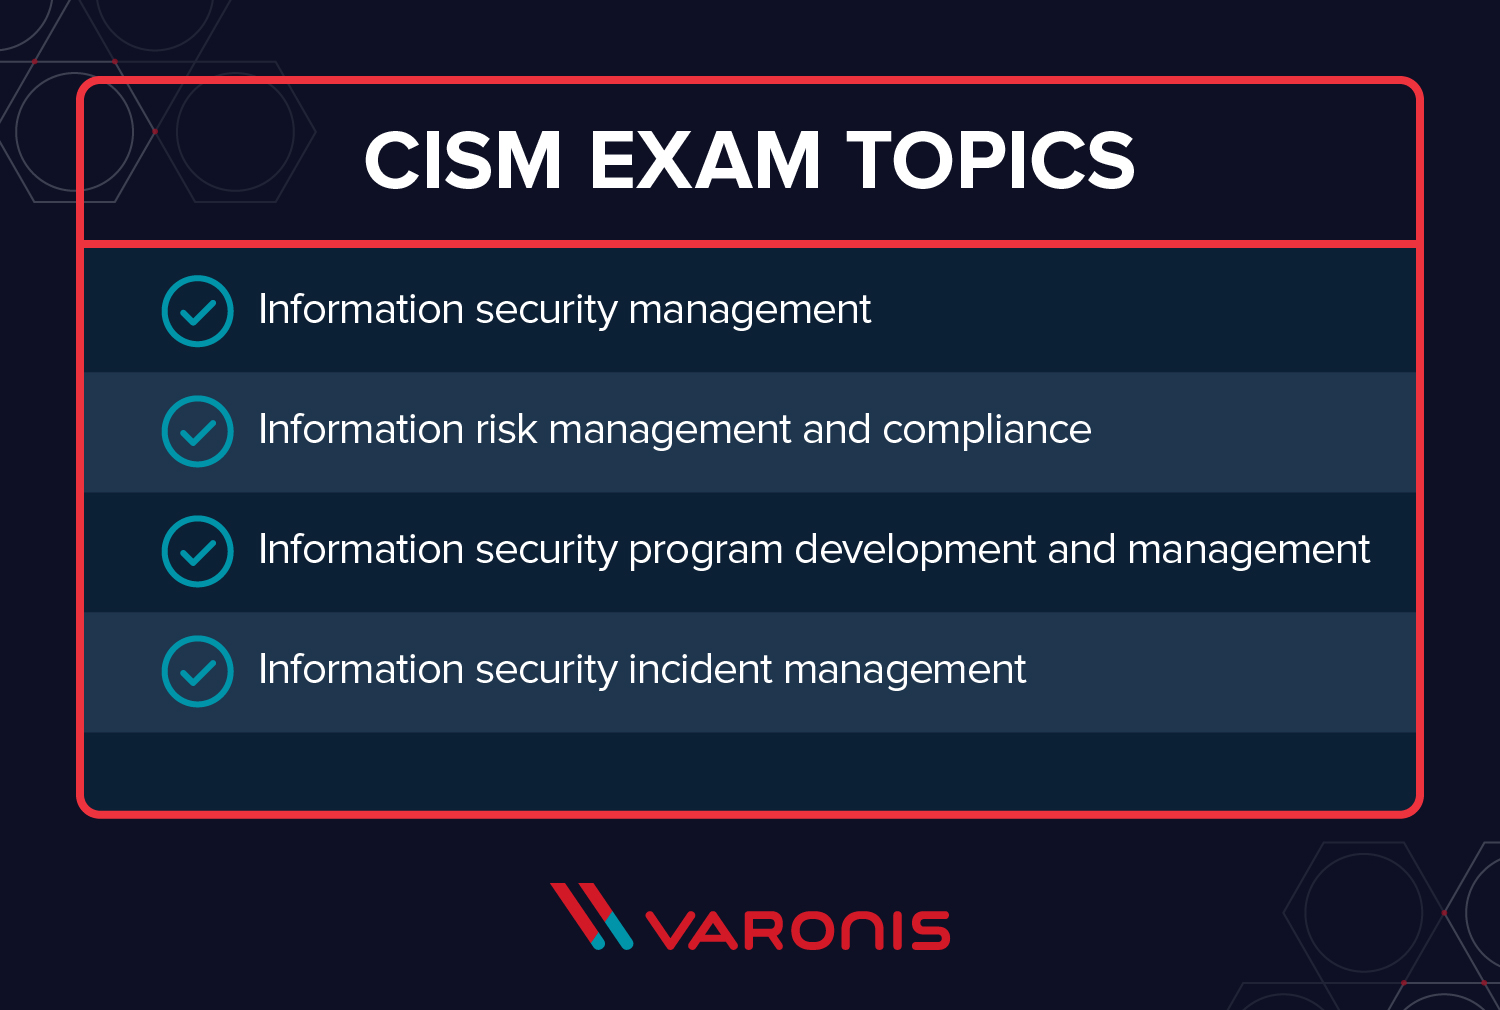 CISM vs CISSP - CISM Exam